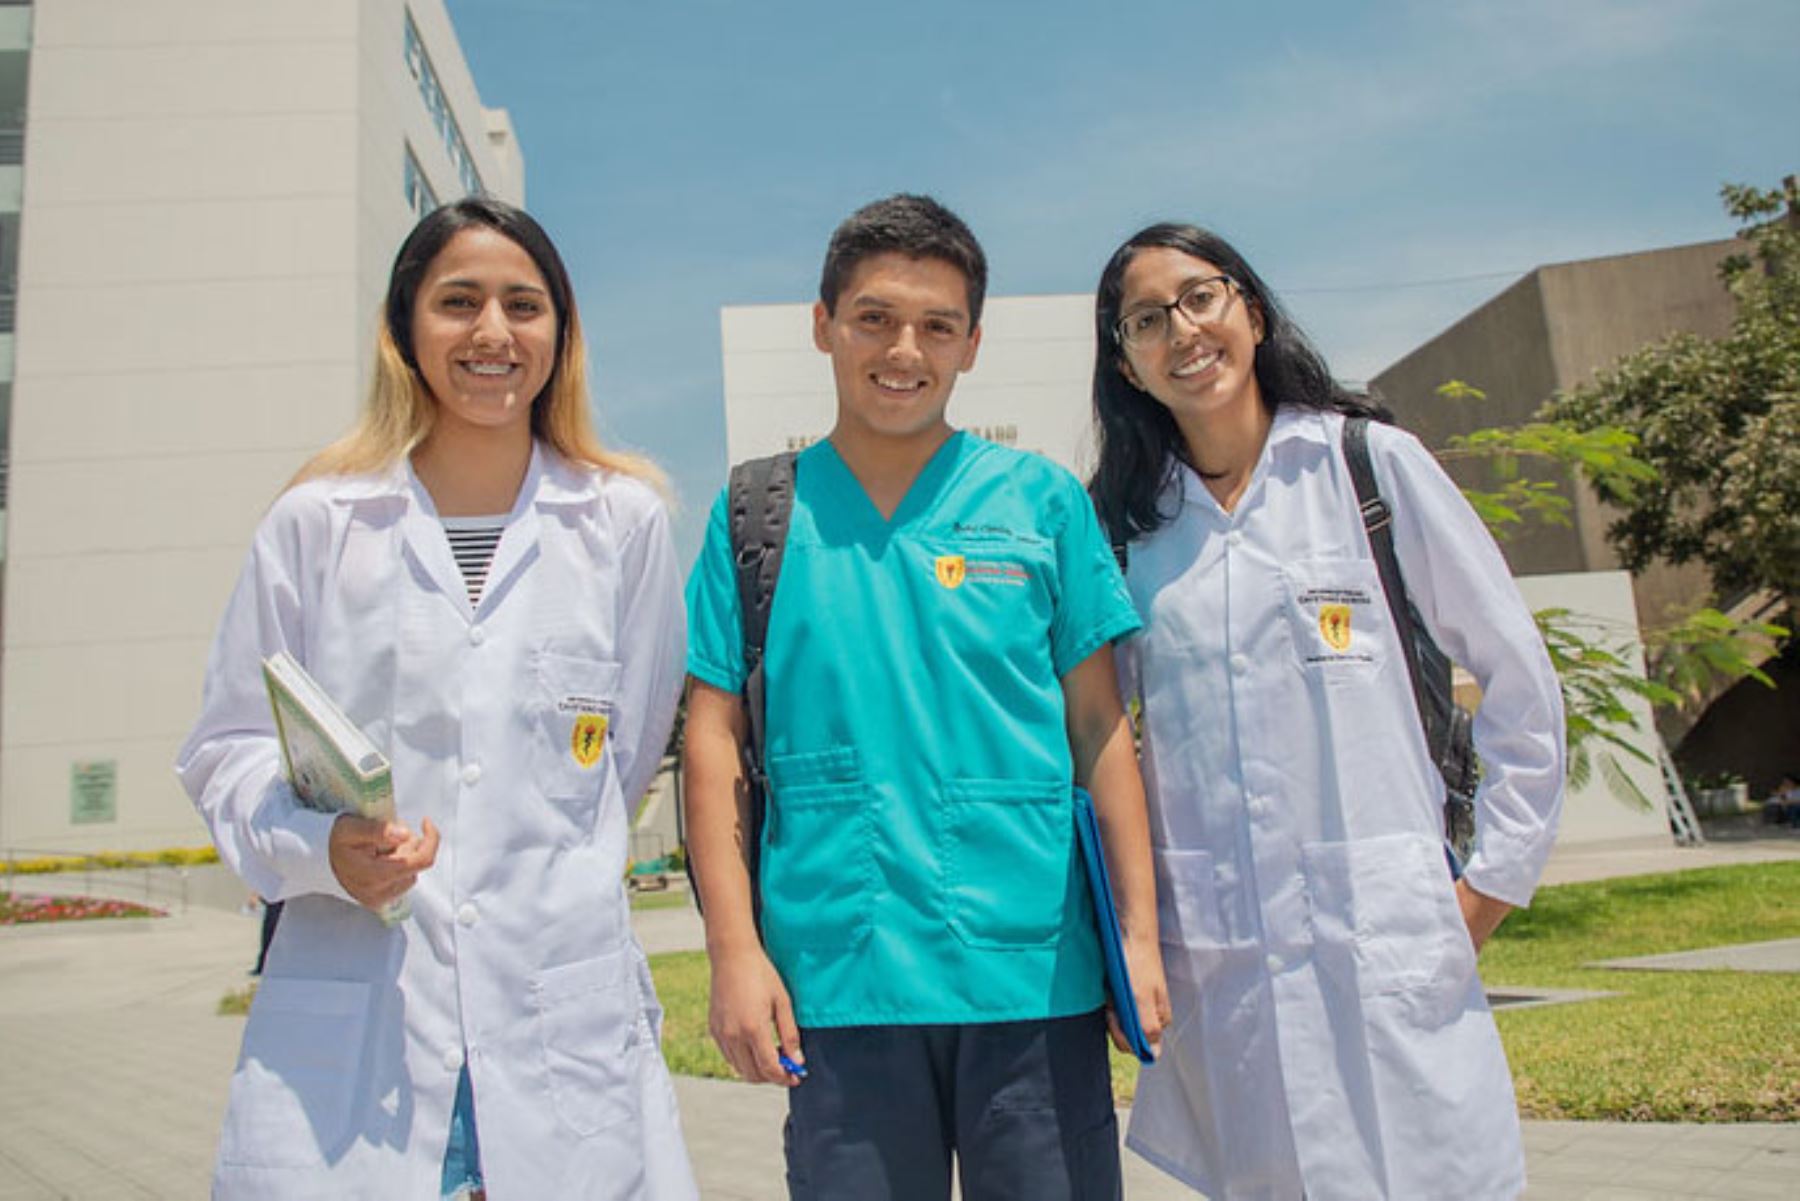 Talentos ganadores y ganadoras de becas y créditos educativos deben de cumplir su Compromiso de Servicio al Perú (CSP). Foto: ANDINA/Difusión